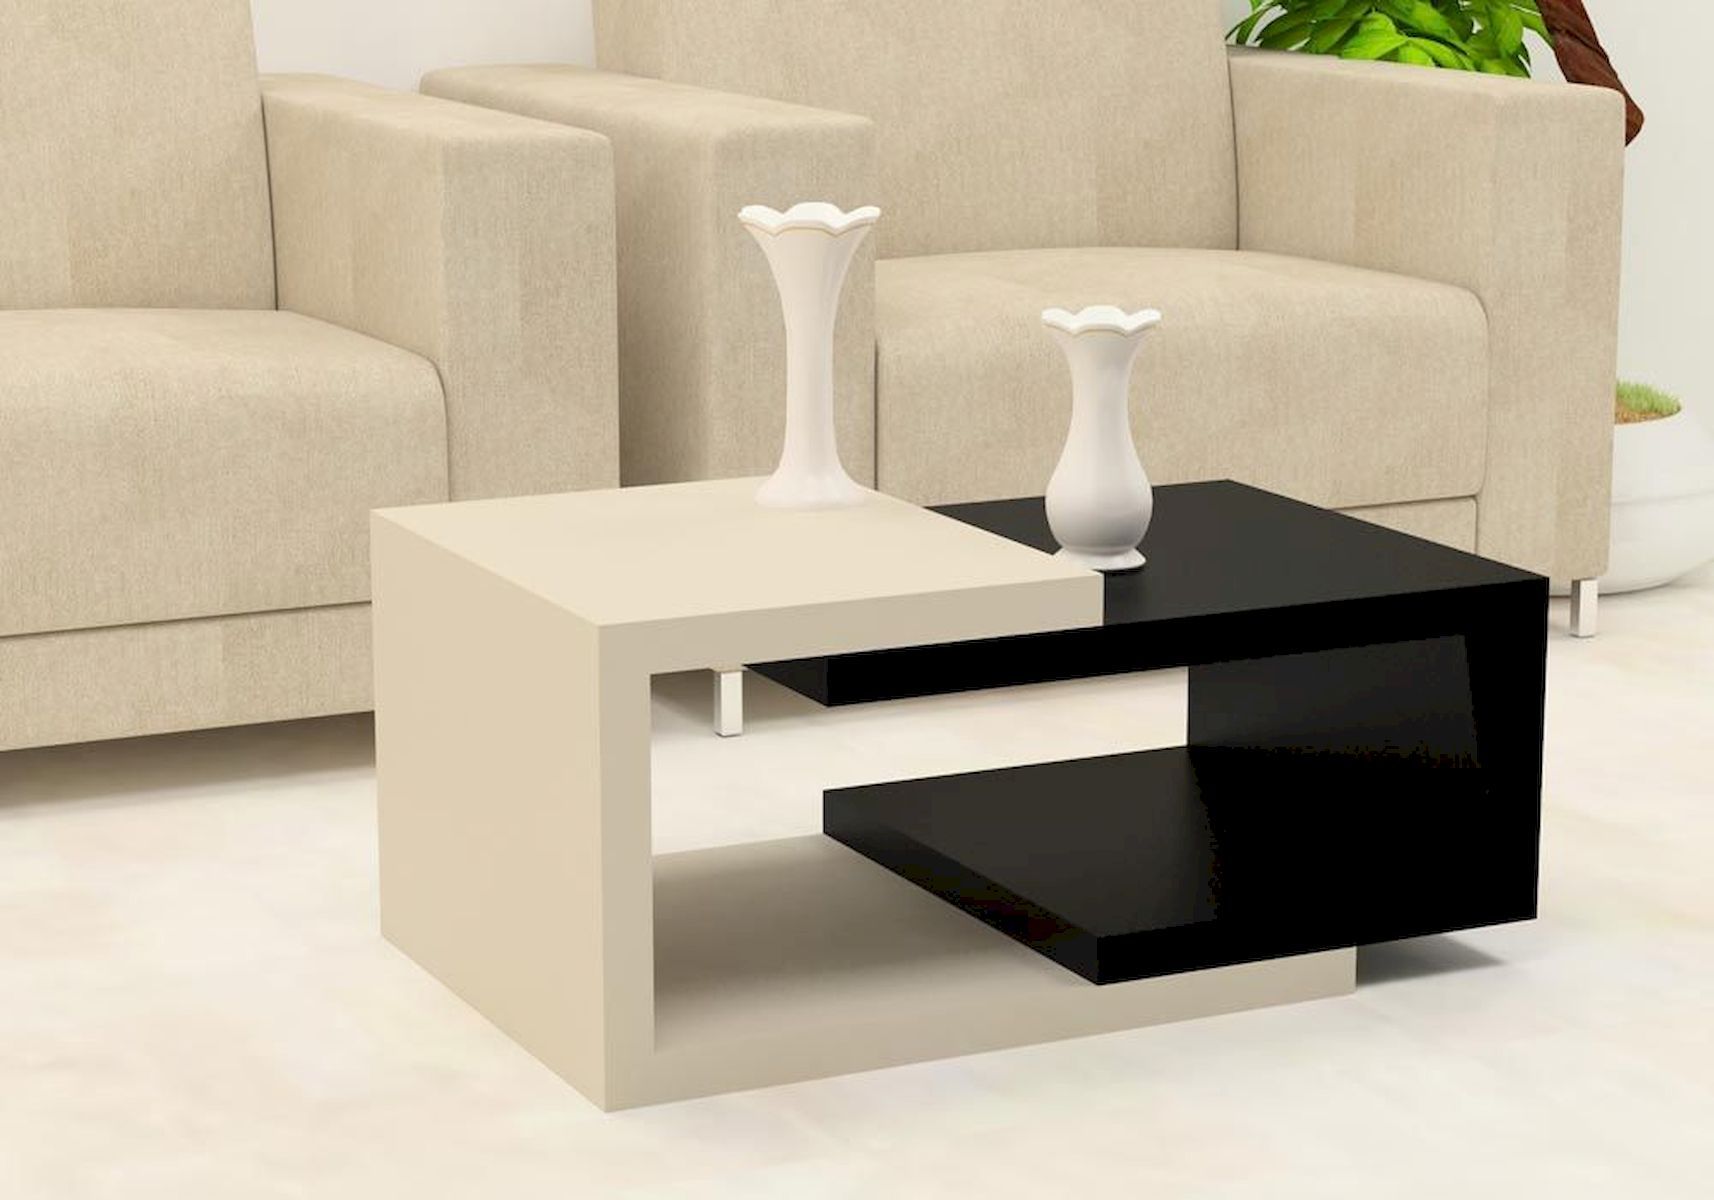 Coffee Table Ideas for Your Living Room - jihanshanum